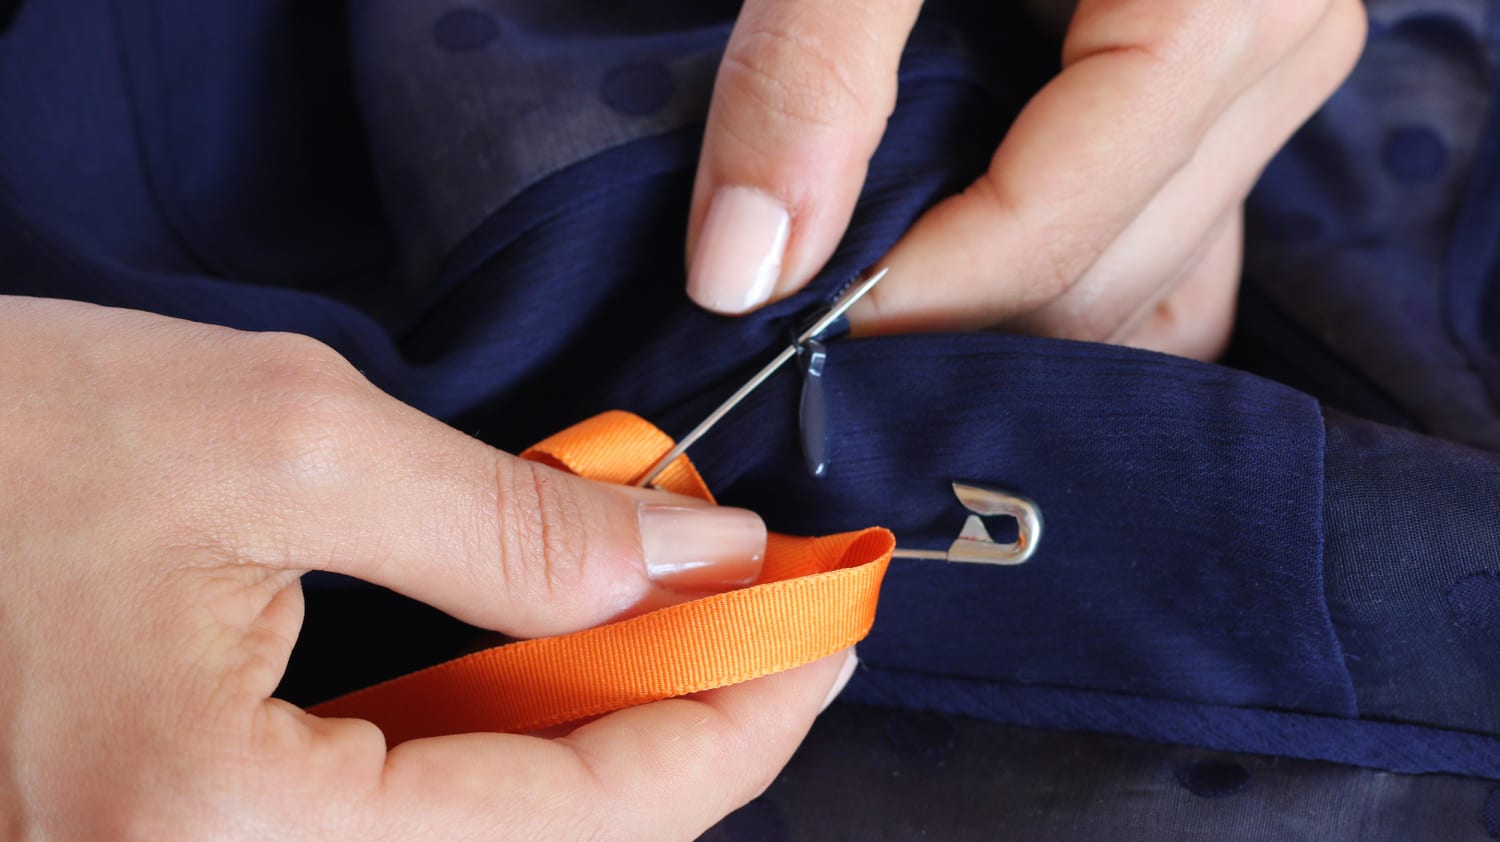 Dress Zipper Puller, Zipper Helper for Zip Up Unzip Dress Zipper Pulls Help  Zipping and Unzipping Aid Tool 